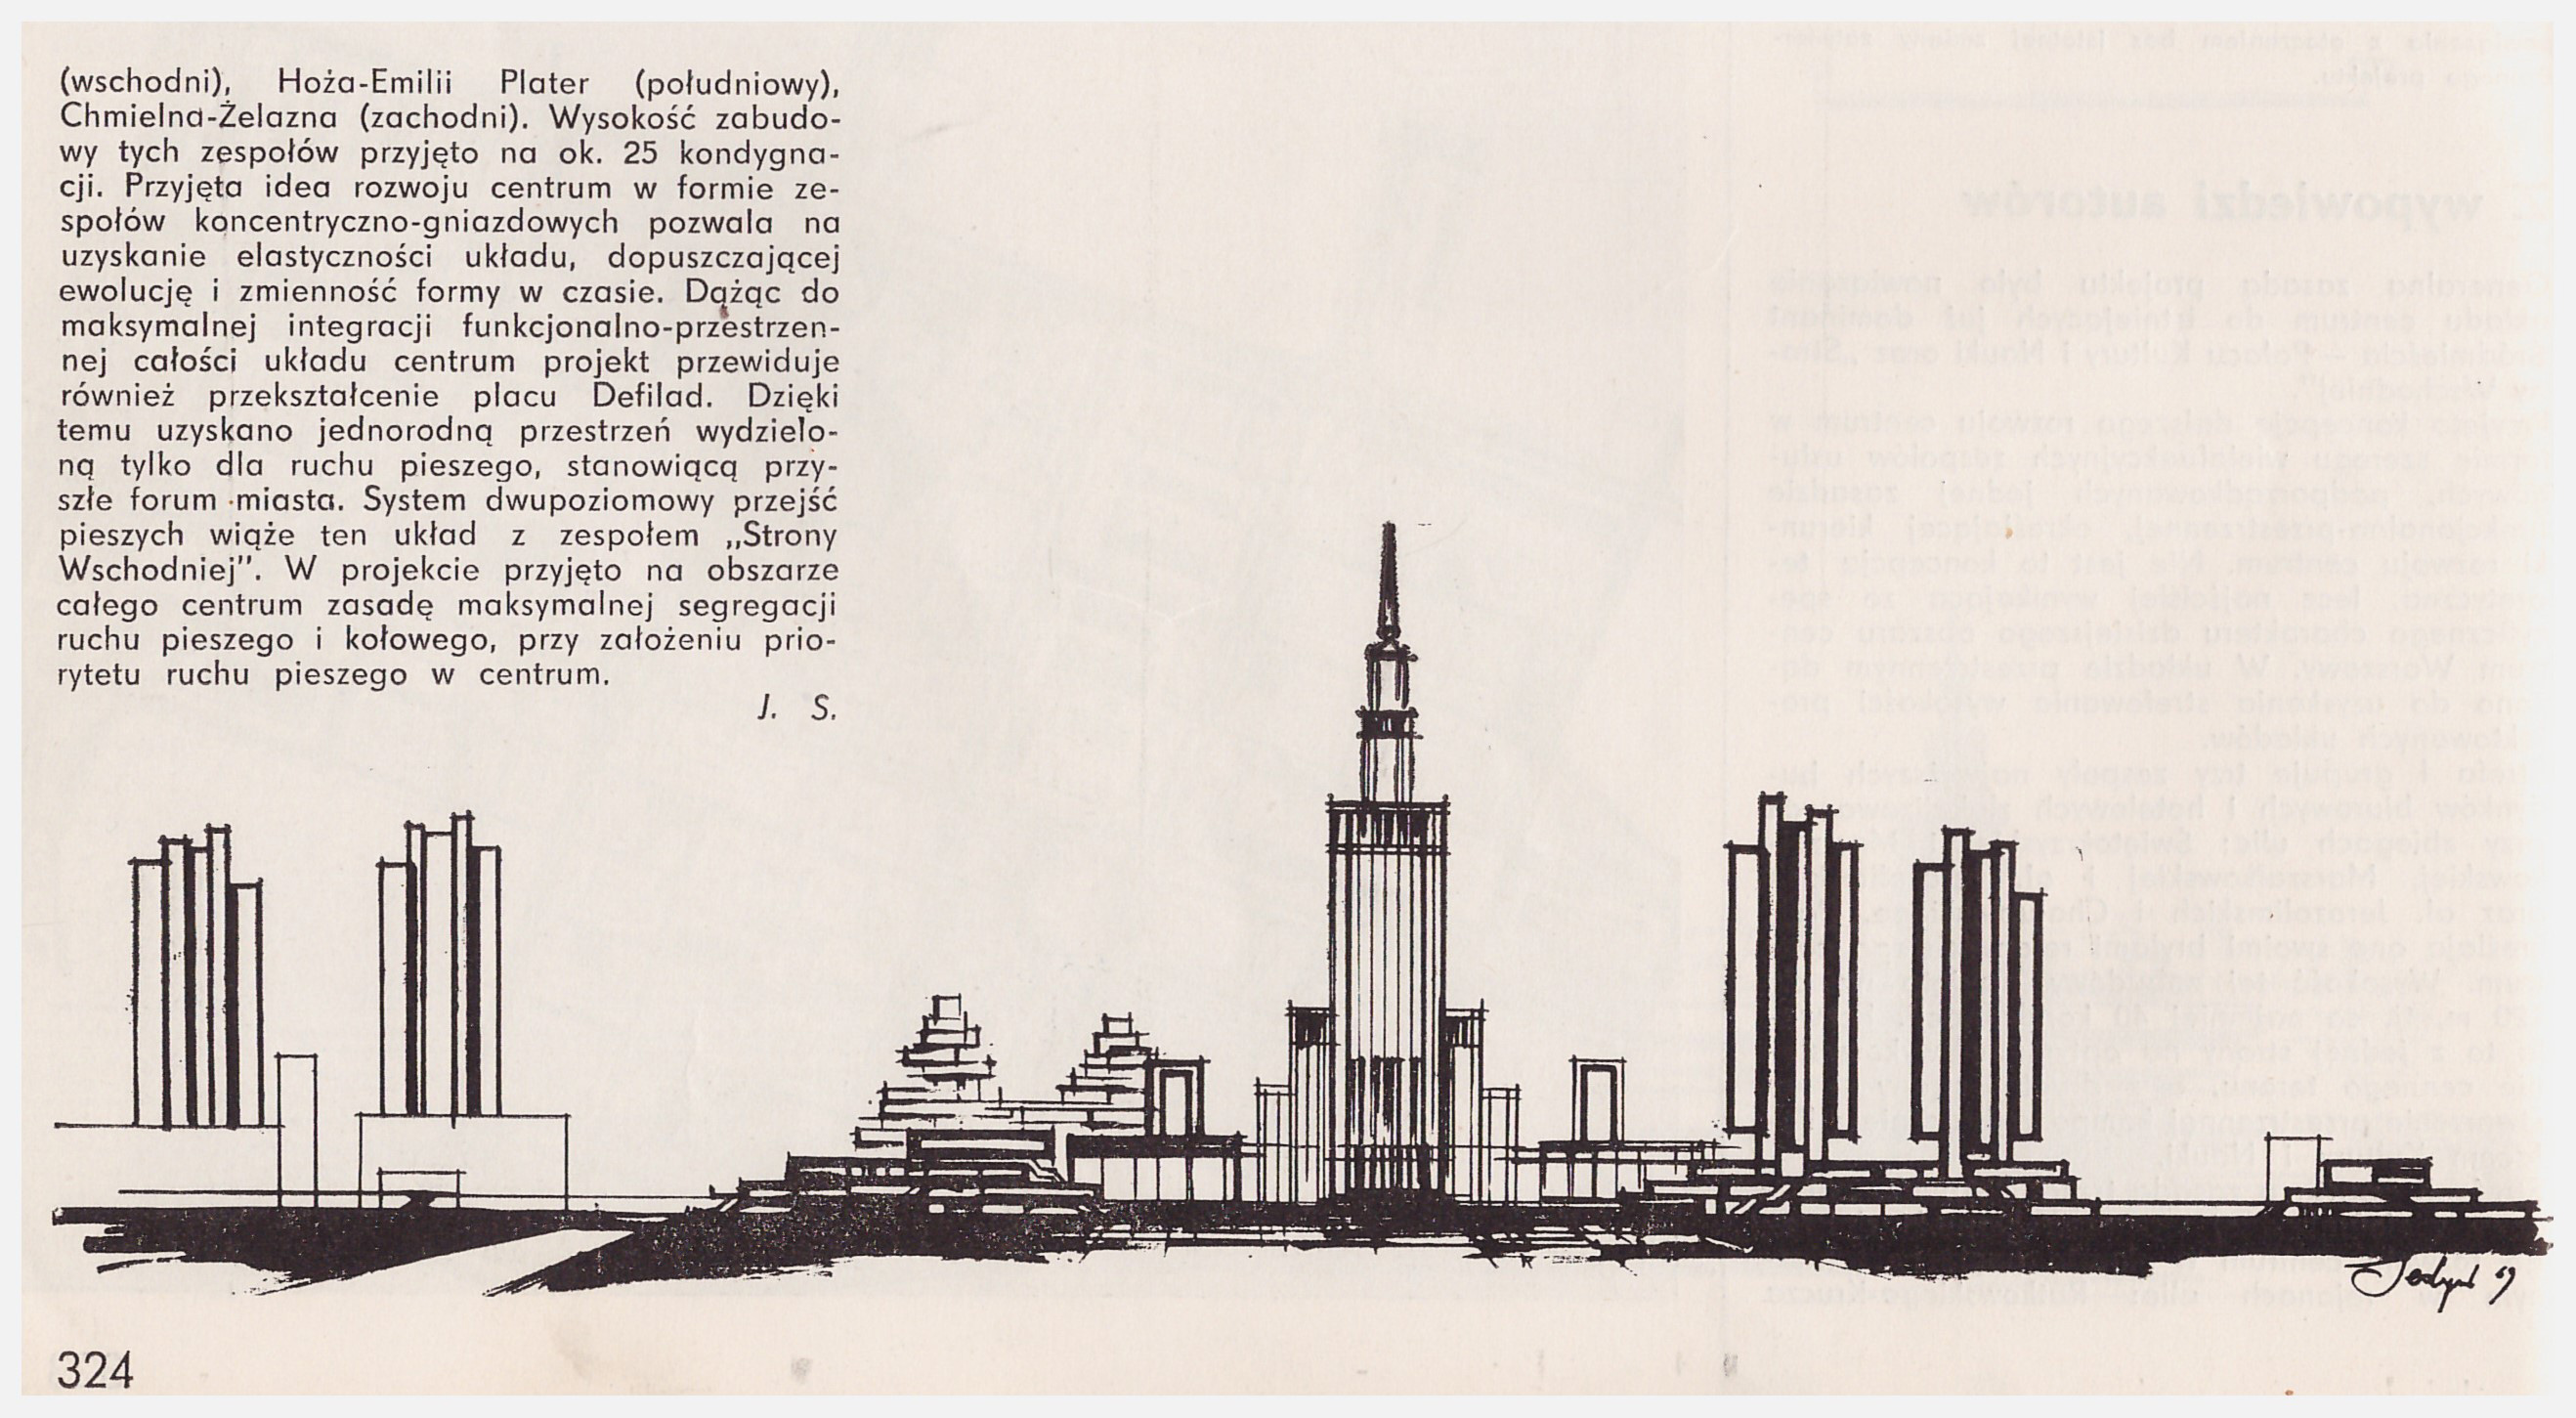 Konkurs otwarty, 1969 r. Projekt zespołu Jerzego Skrzypczaka. Równorzędna I nagroda. Kompozycja Ściany Zachodniej, źródło: "Architektura", 1970.